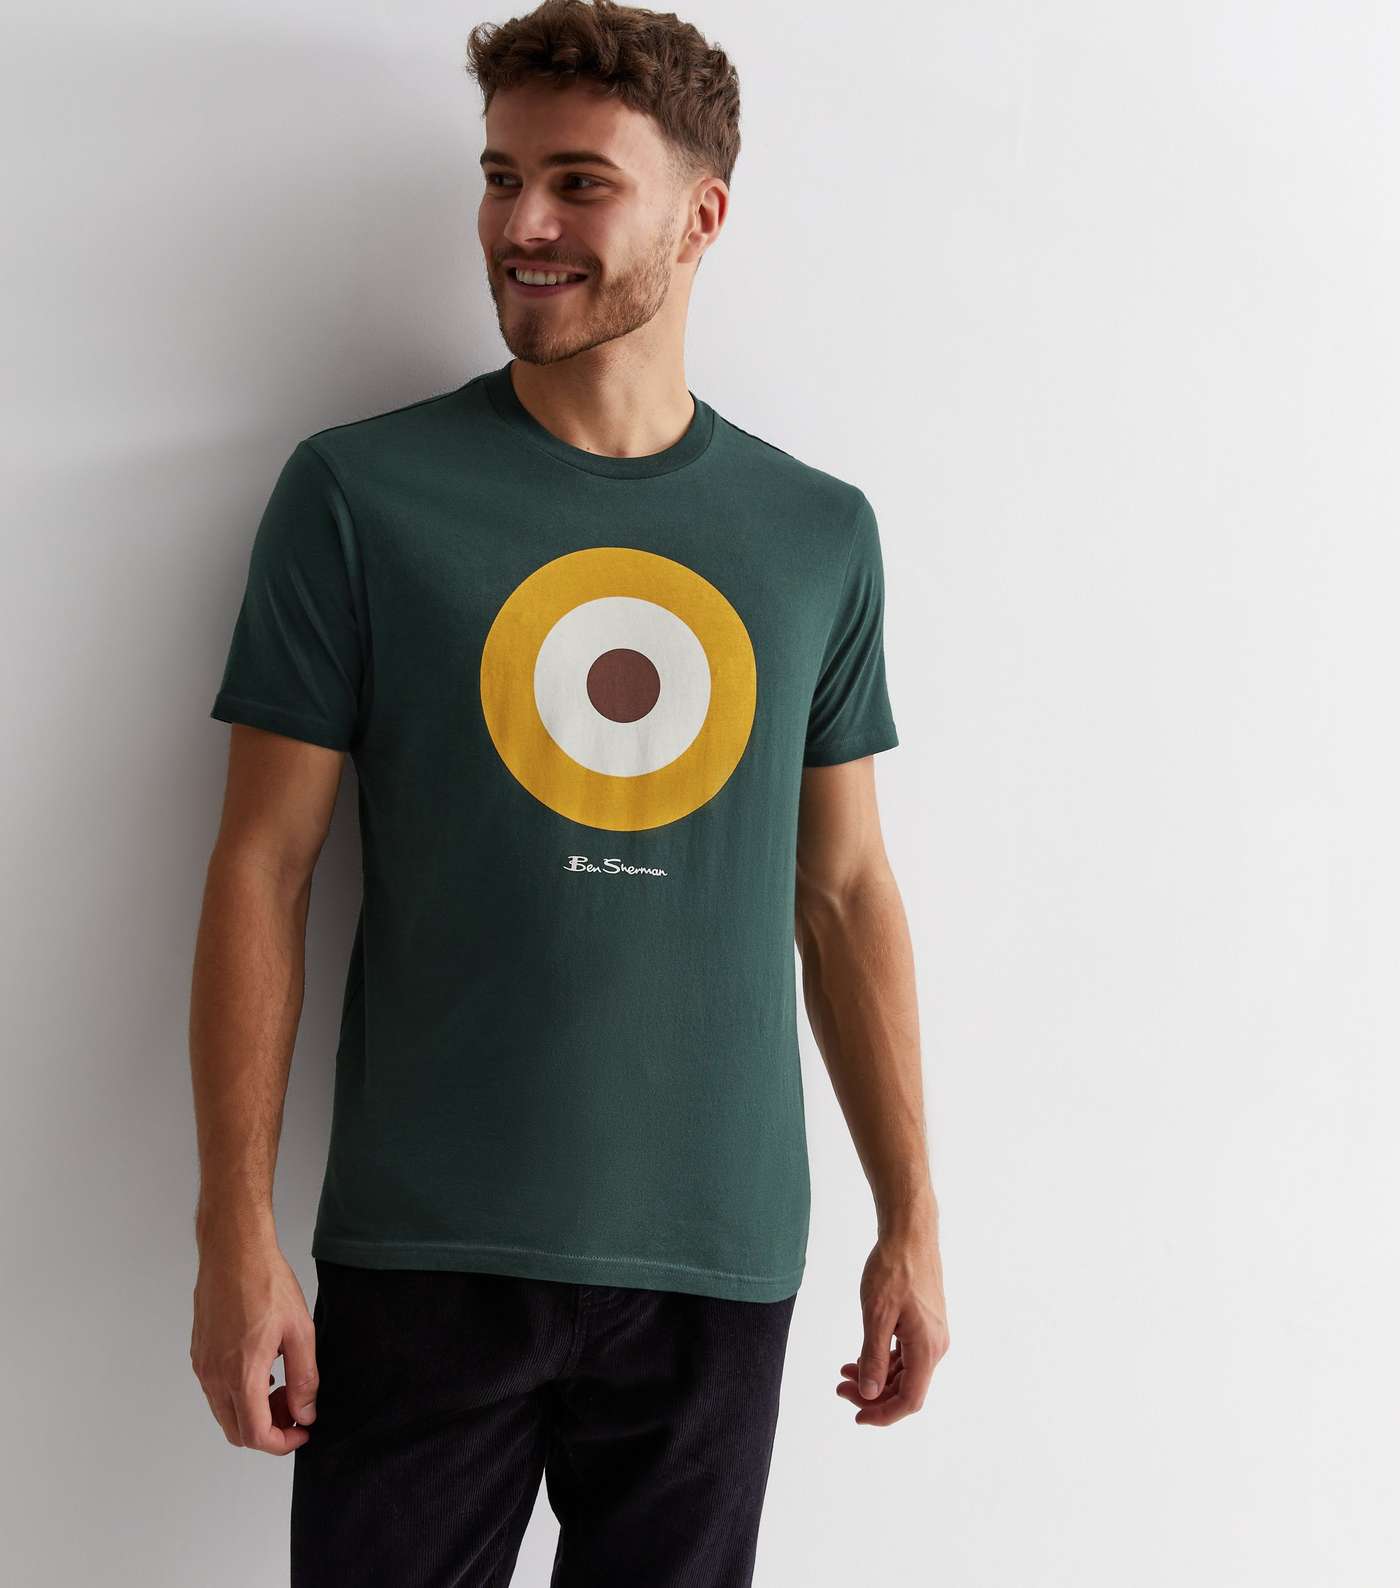 Ben Sherman Dark Green Cotton Target Logo T-Shirt Image 2